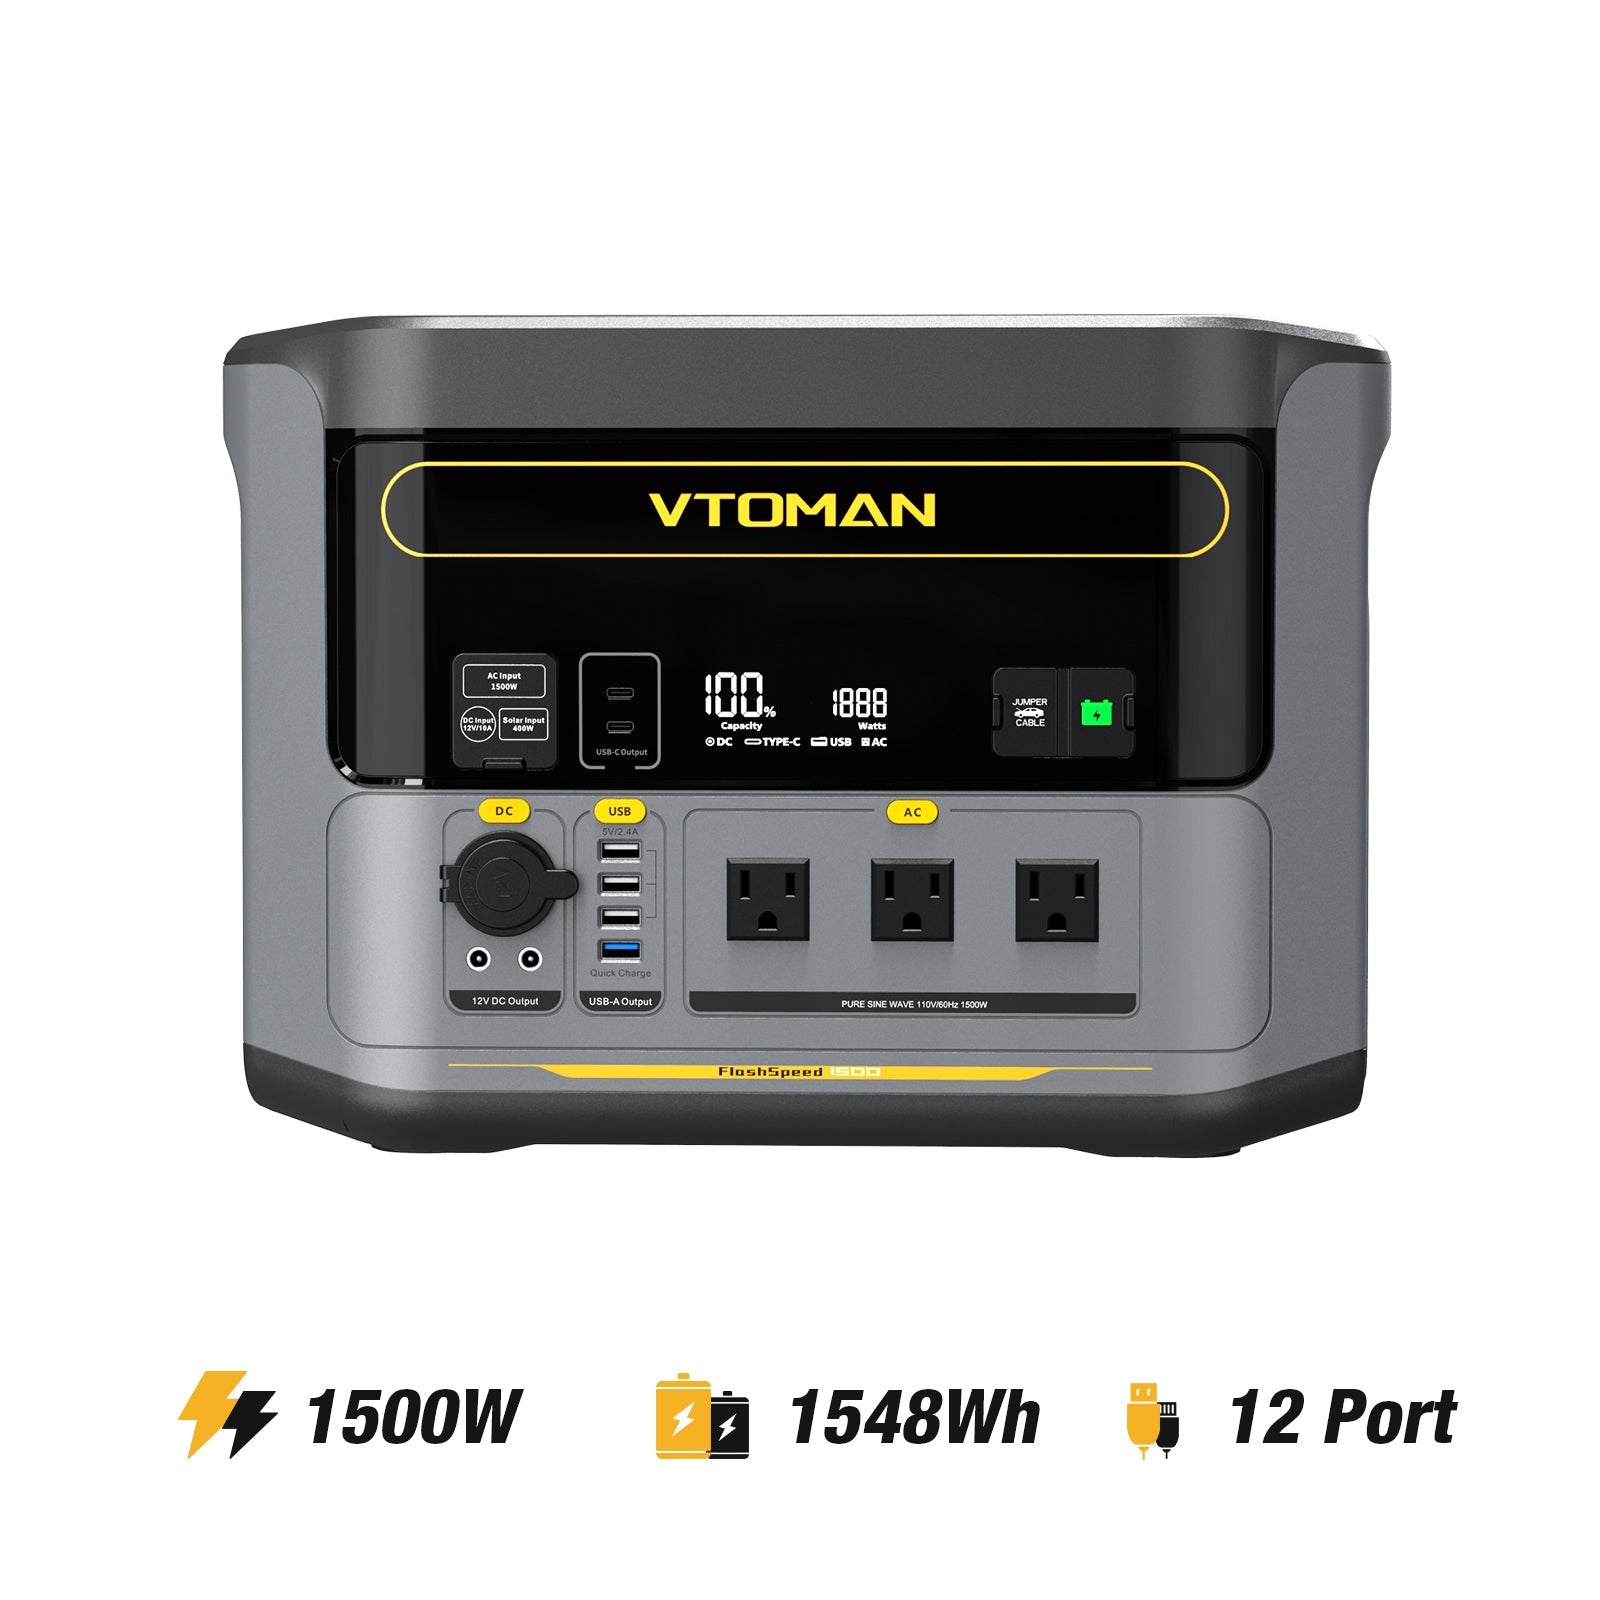 VTOMAN FlashSpeed 1500 power station